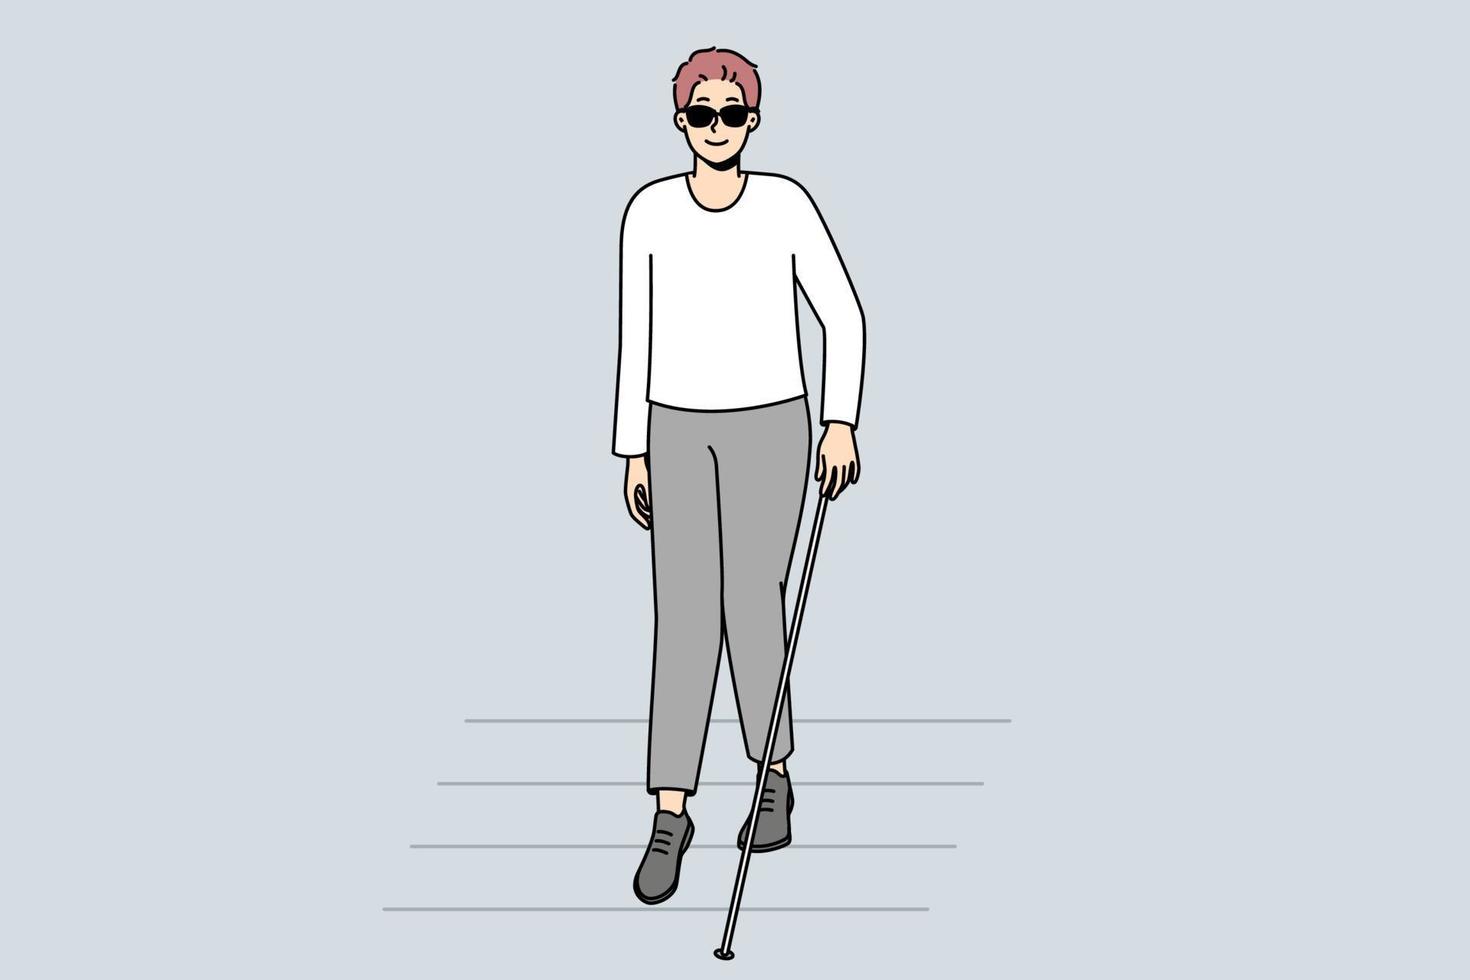 cego com bengala andando na faixa de pedestres. homem com deficiência em óculos escuros, cruzando a estrada. deficiência e saúde. ilustração vetorial. vetor